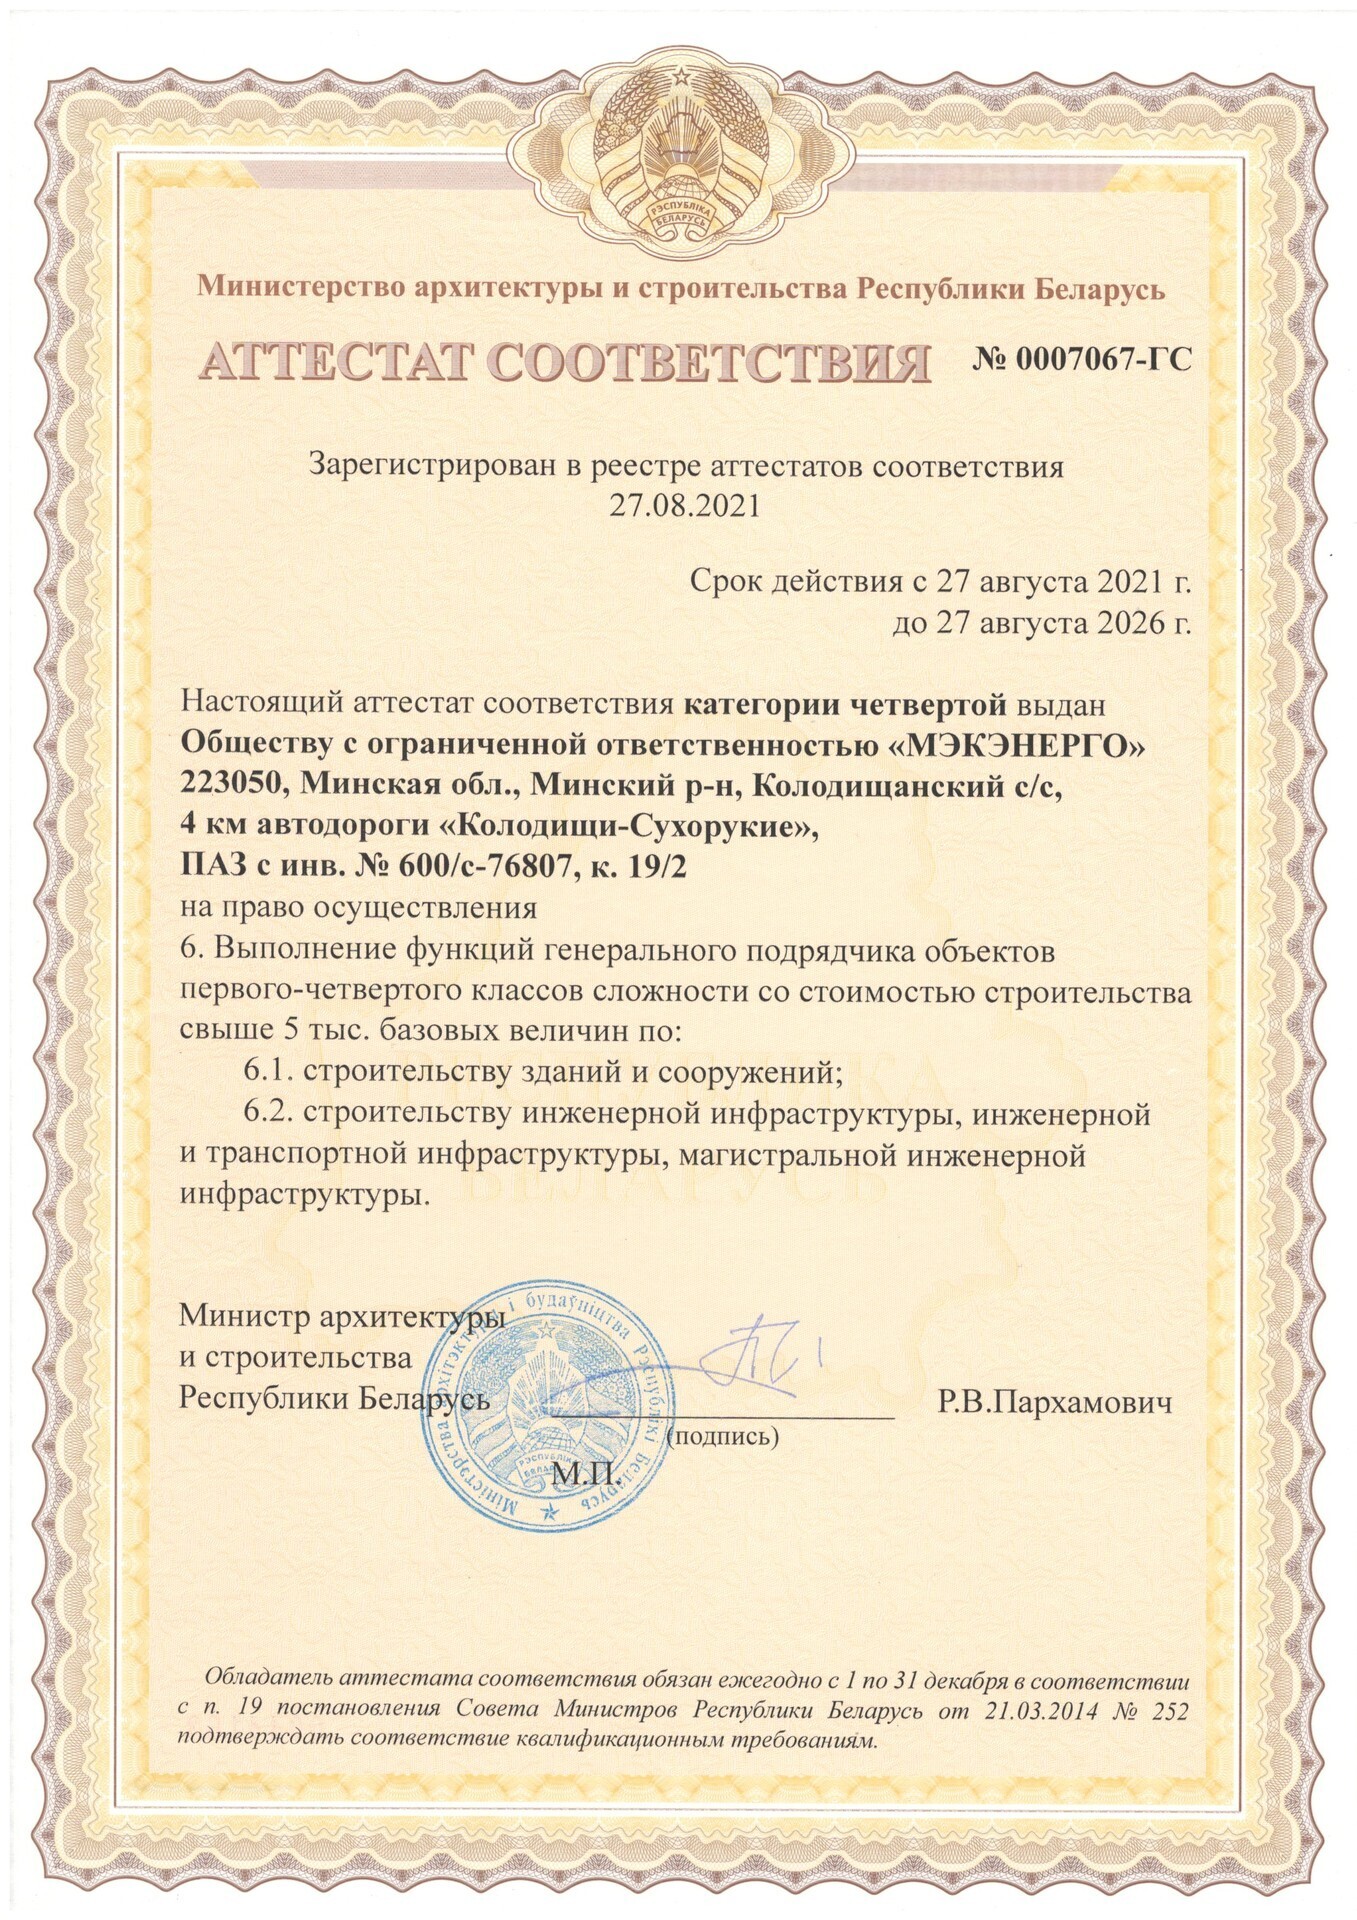 Сертификат соответствия генерального подрядчика